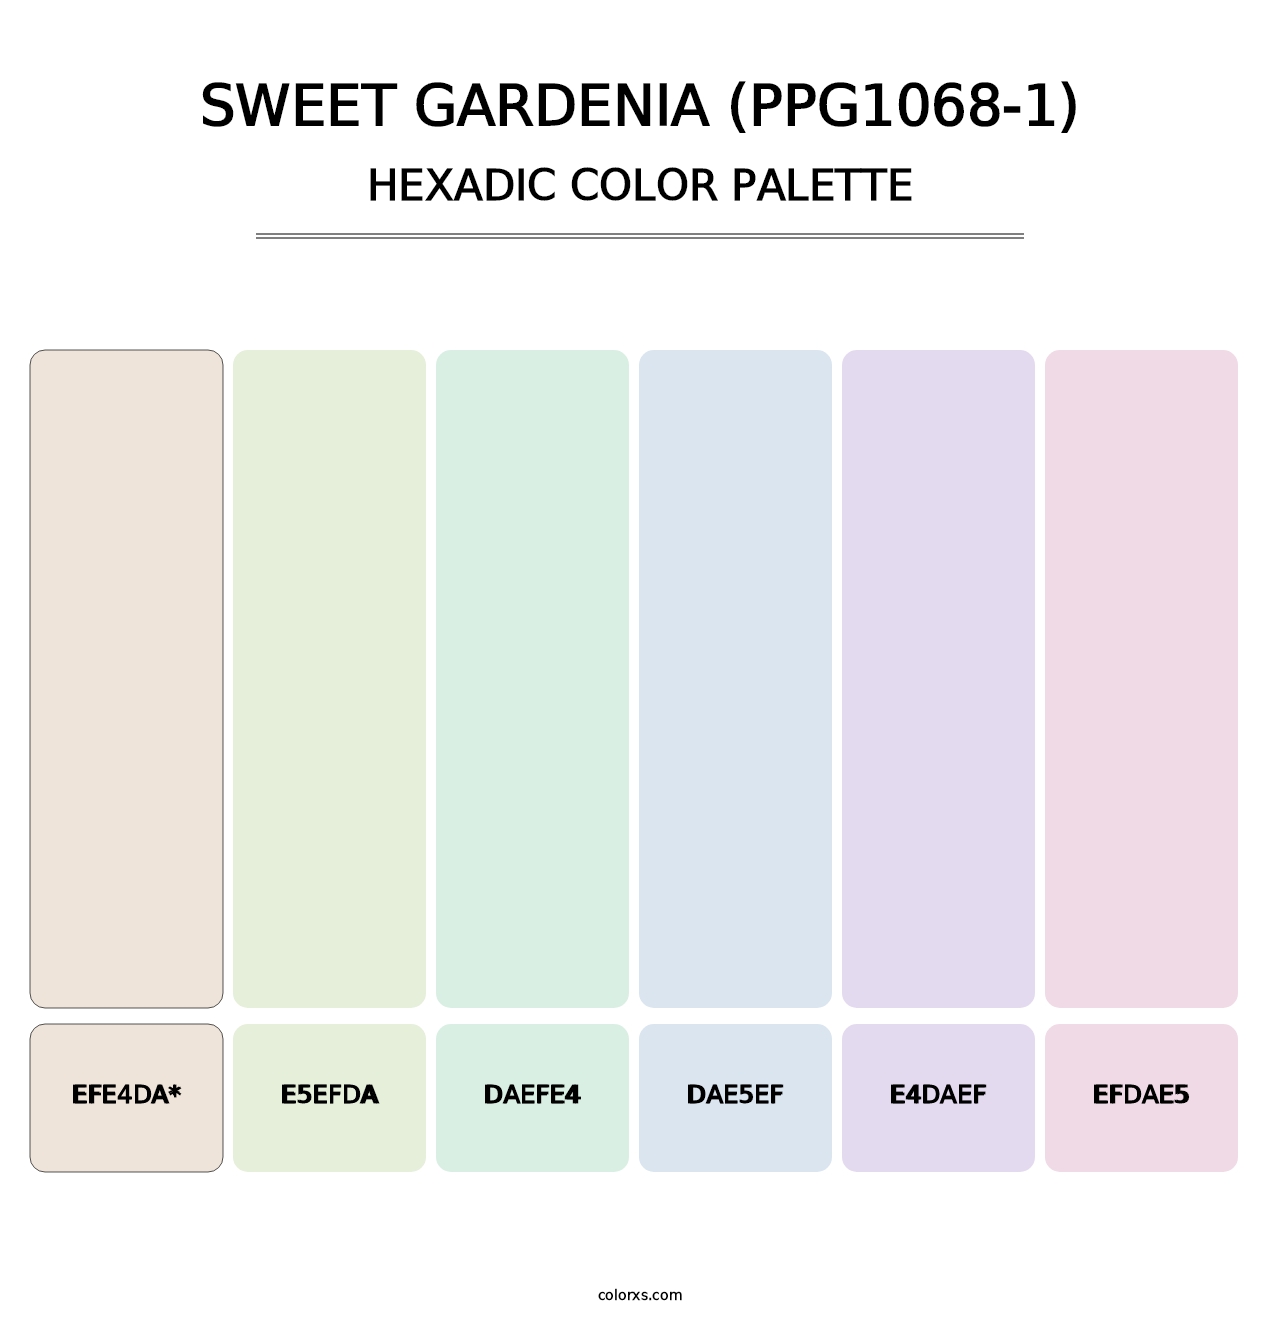 Sweet Gardenia (PPG1068-1) - Hexadic Color Palette